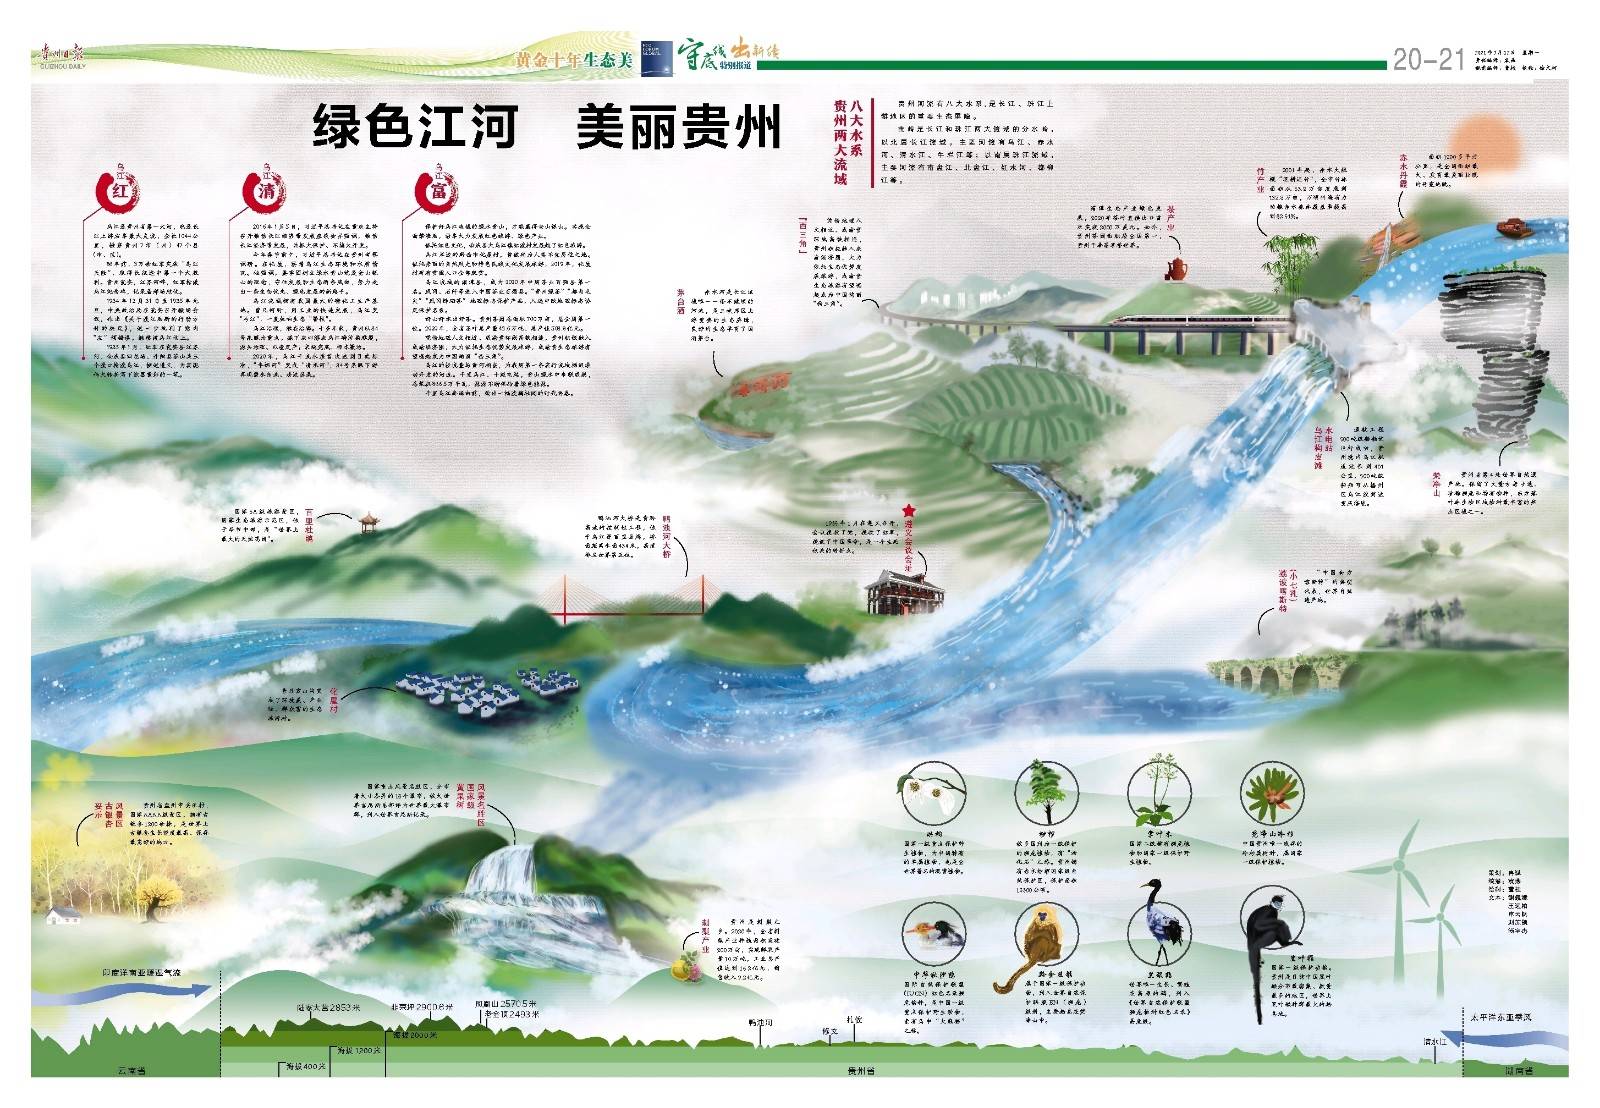 贵州河流有八大水系,是长江,珠江上游地区的重要生态屏障